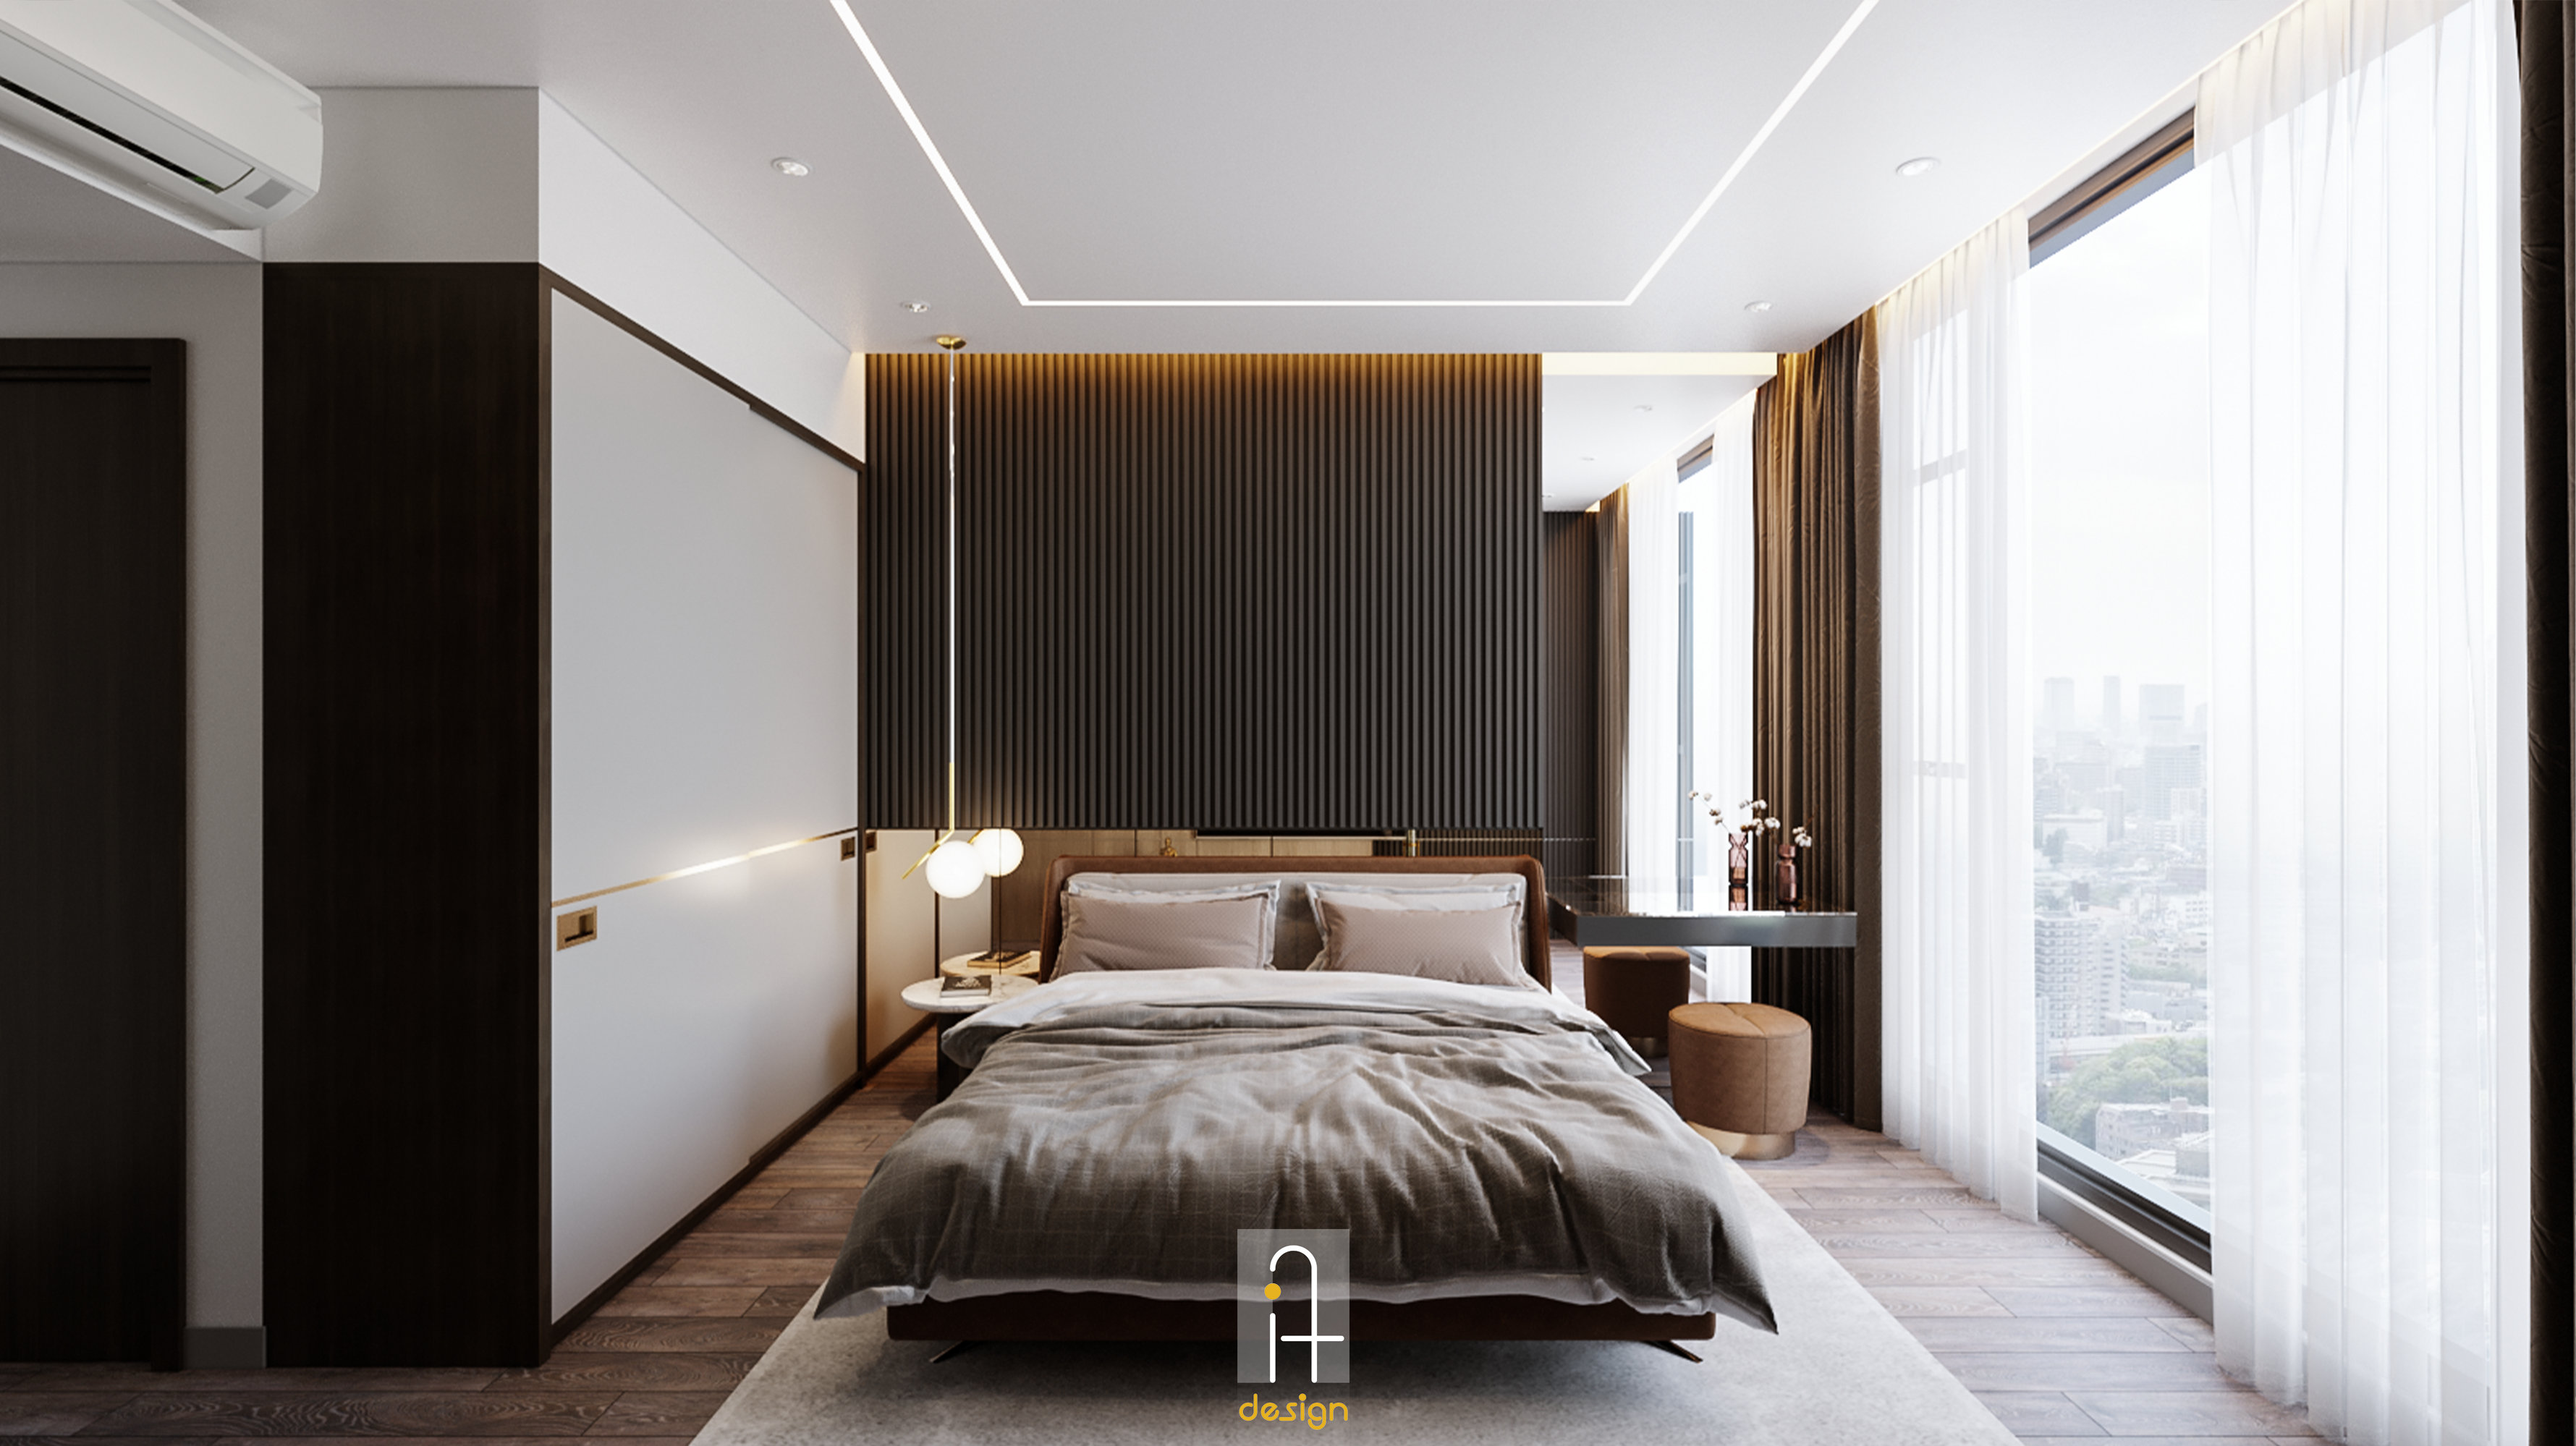 Thiết kế concept nội thất phòng ngủ Căn hộ 2PN Empire City phong cách Hiện đại Modern